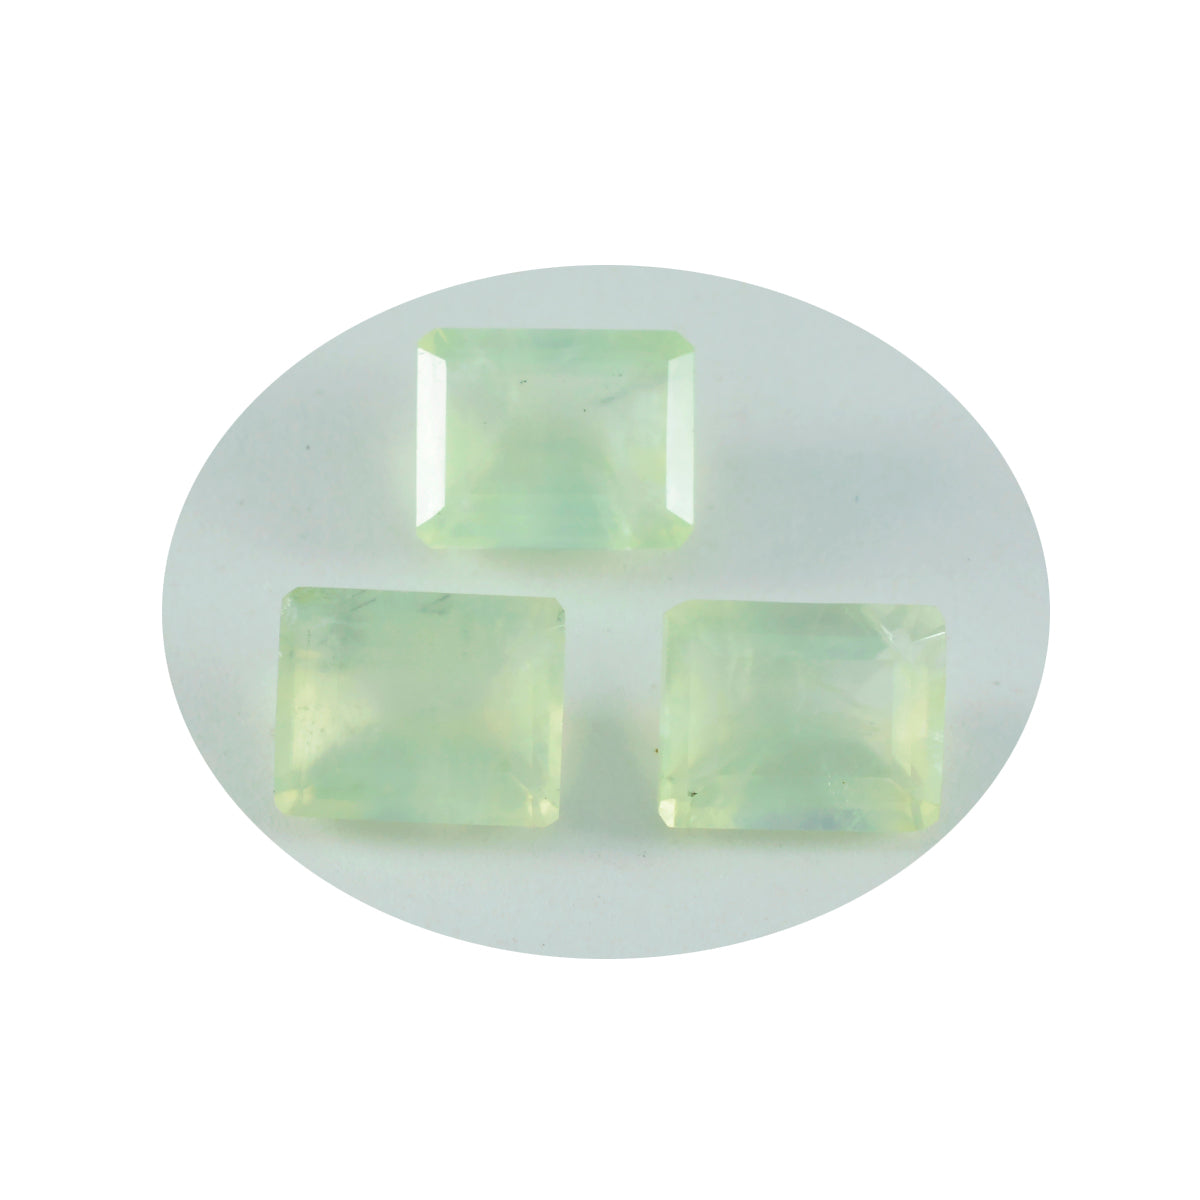 Riyogems 1PC groene prehniet gefacetteerde 9x11 mm achthoekige vorm fantastische kwaliteitsedelstenen